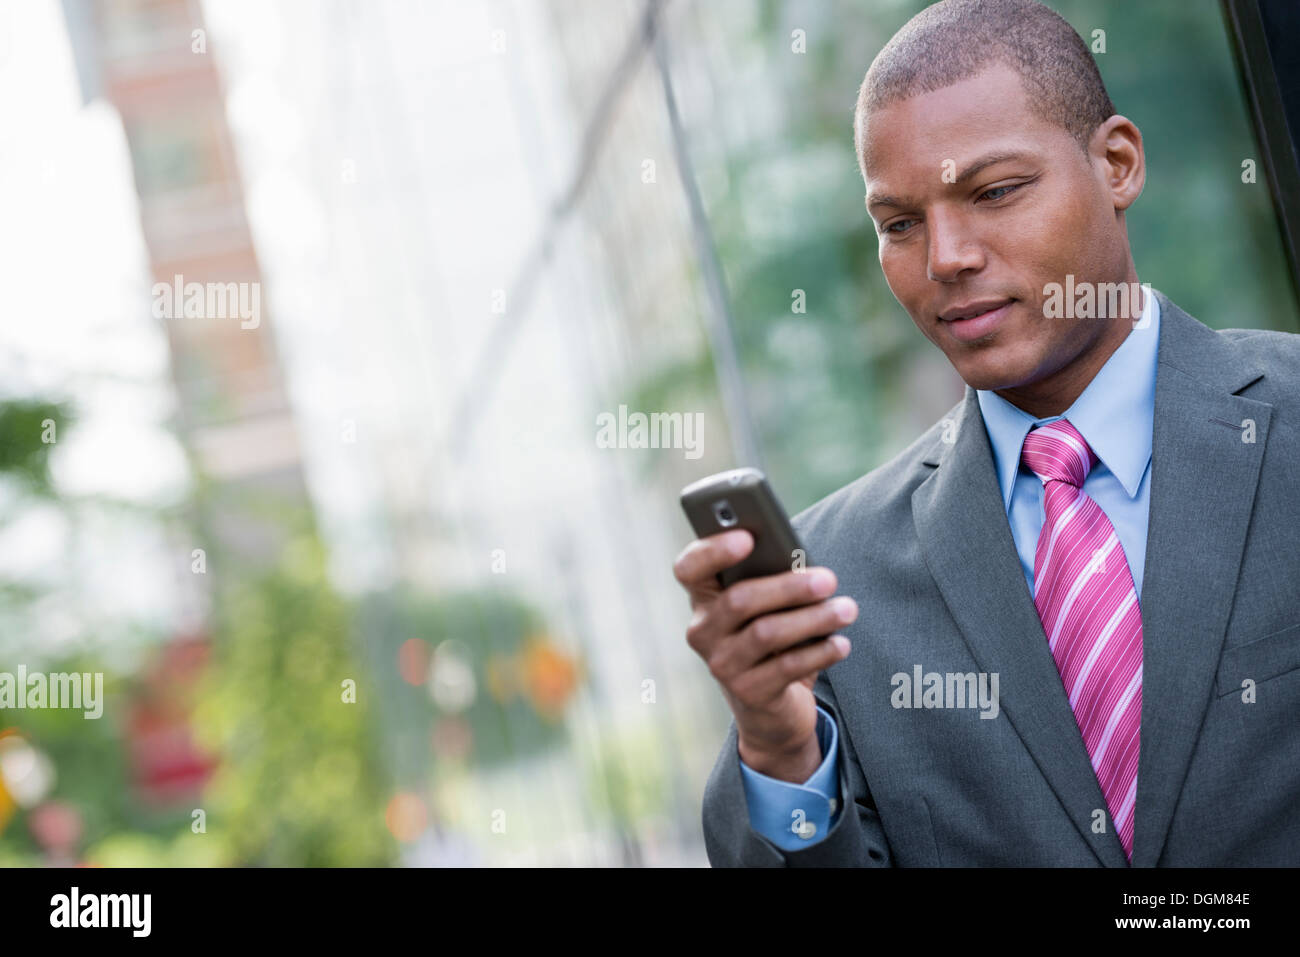 Ein junger Mann in einem Business-Anzug, ein hellblaues Hemd mit roter Krawatte. In einer New-York-City-Straße. Verwenden ein smart Phone. Stockfoto